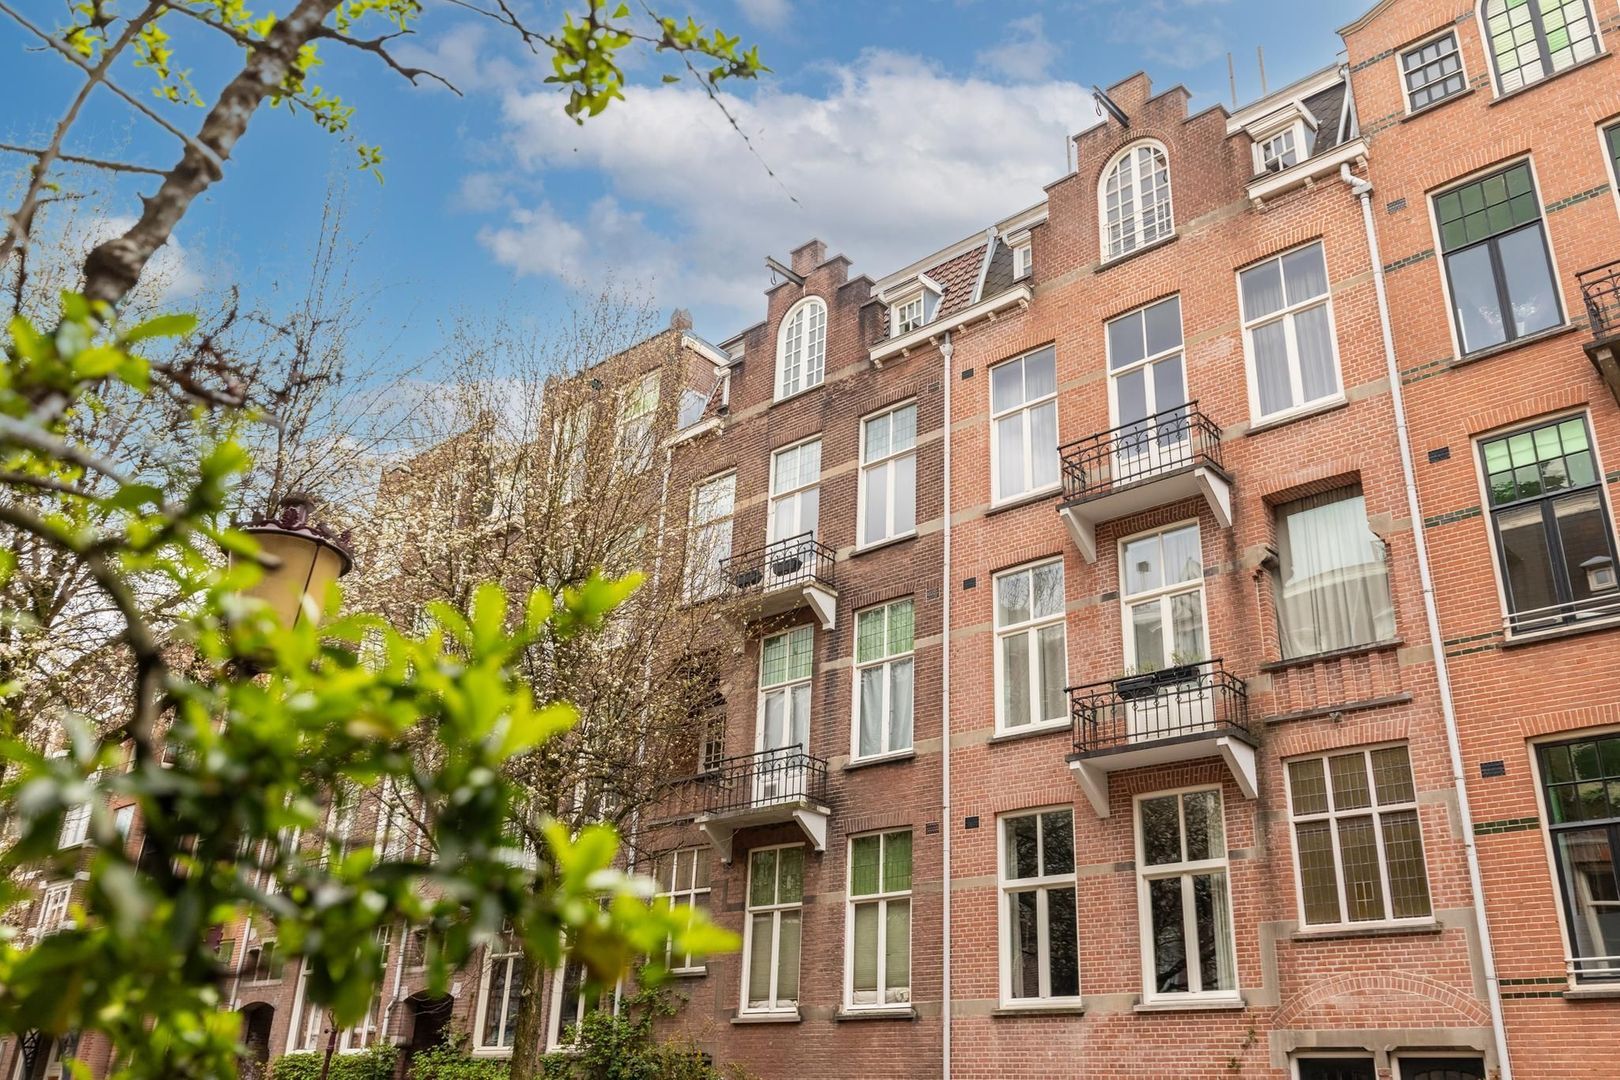 Bekijk foto 1/51 van apartment in Amsterdam